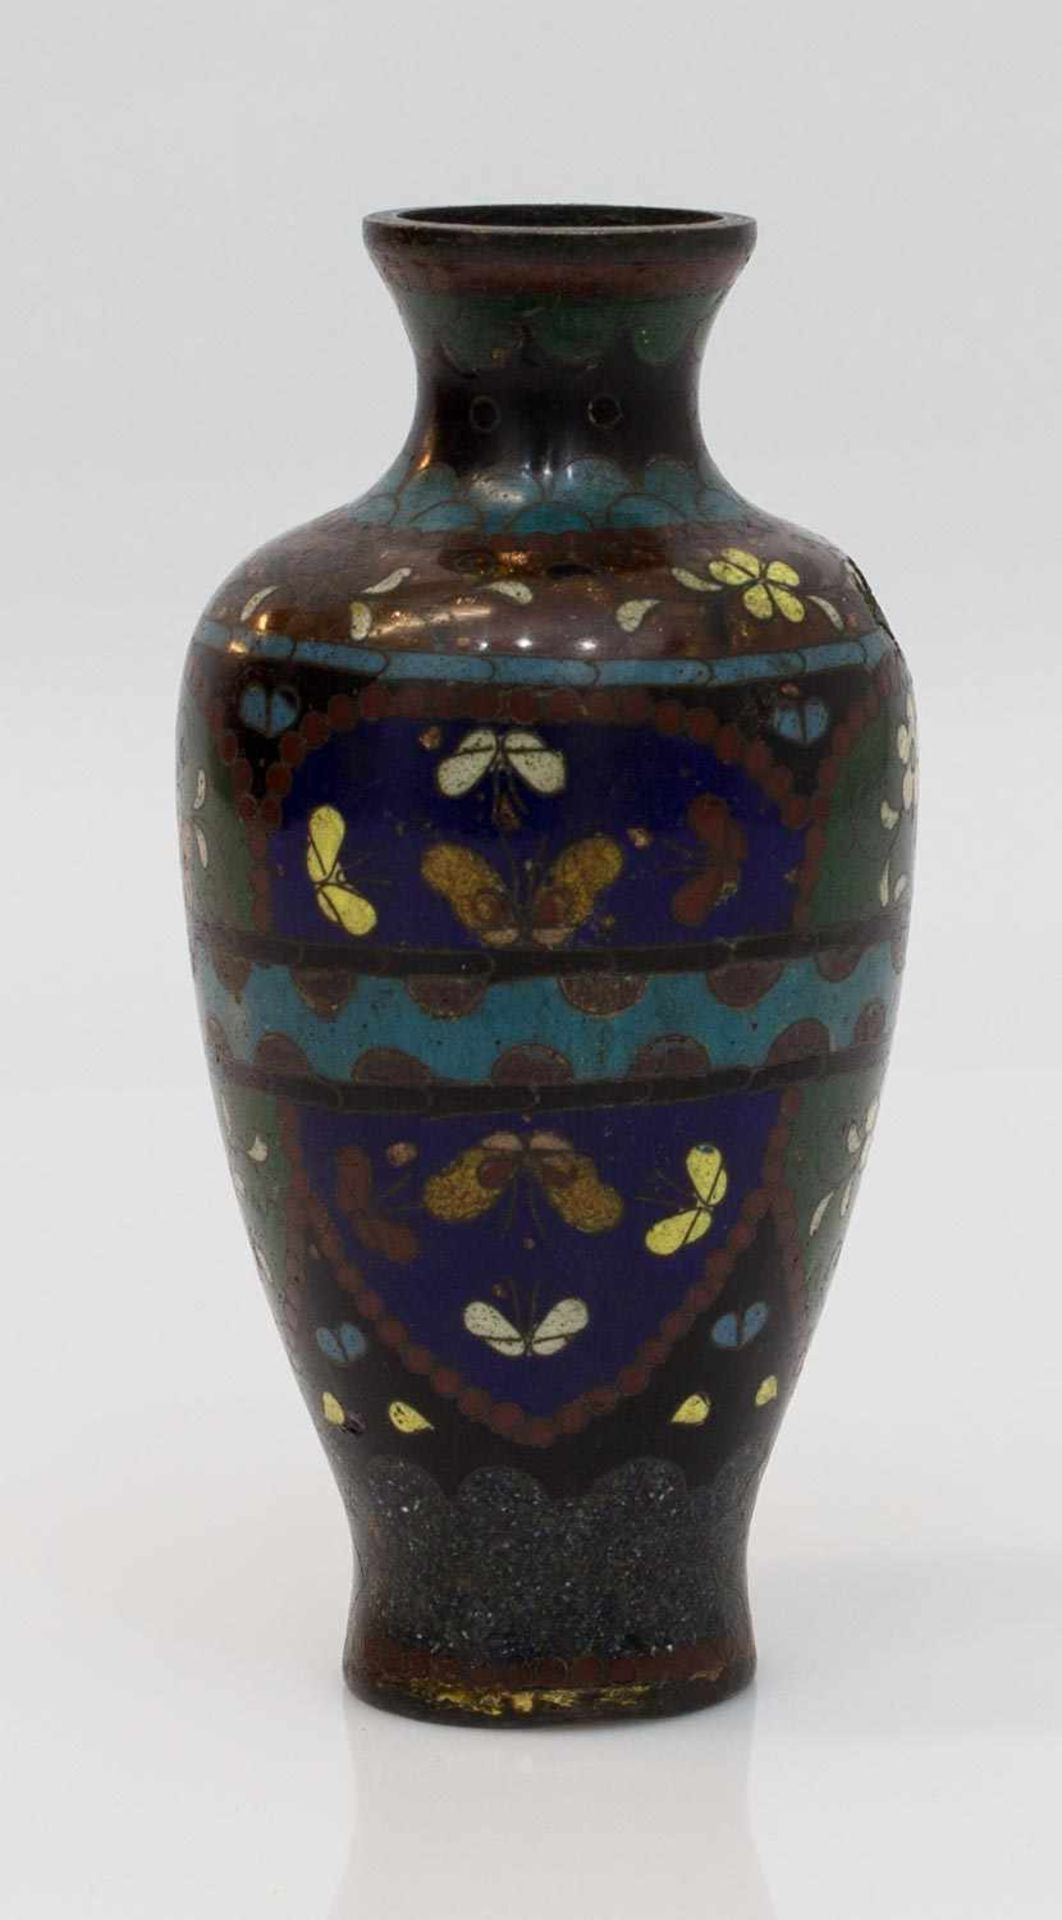 Antike Cloissonette Vase Asien 19. Jh., Blumen- u. Insektendekor auf Kupfer, diverse Beschädigungen, - Bild 2 aus 2